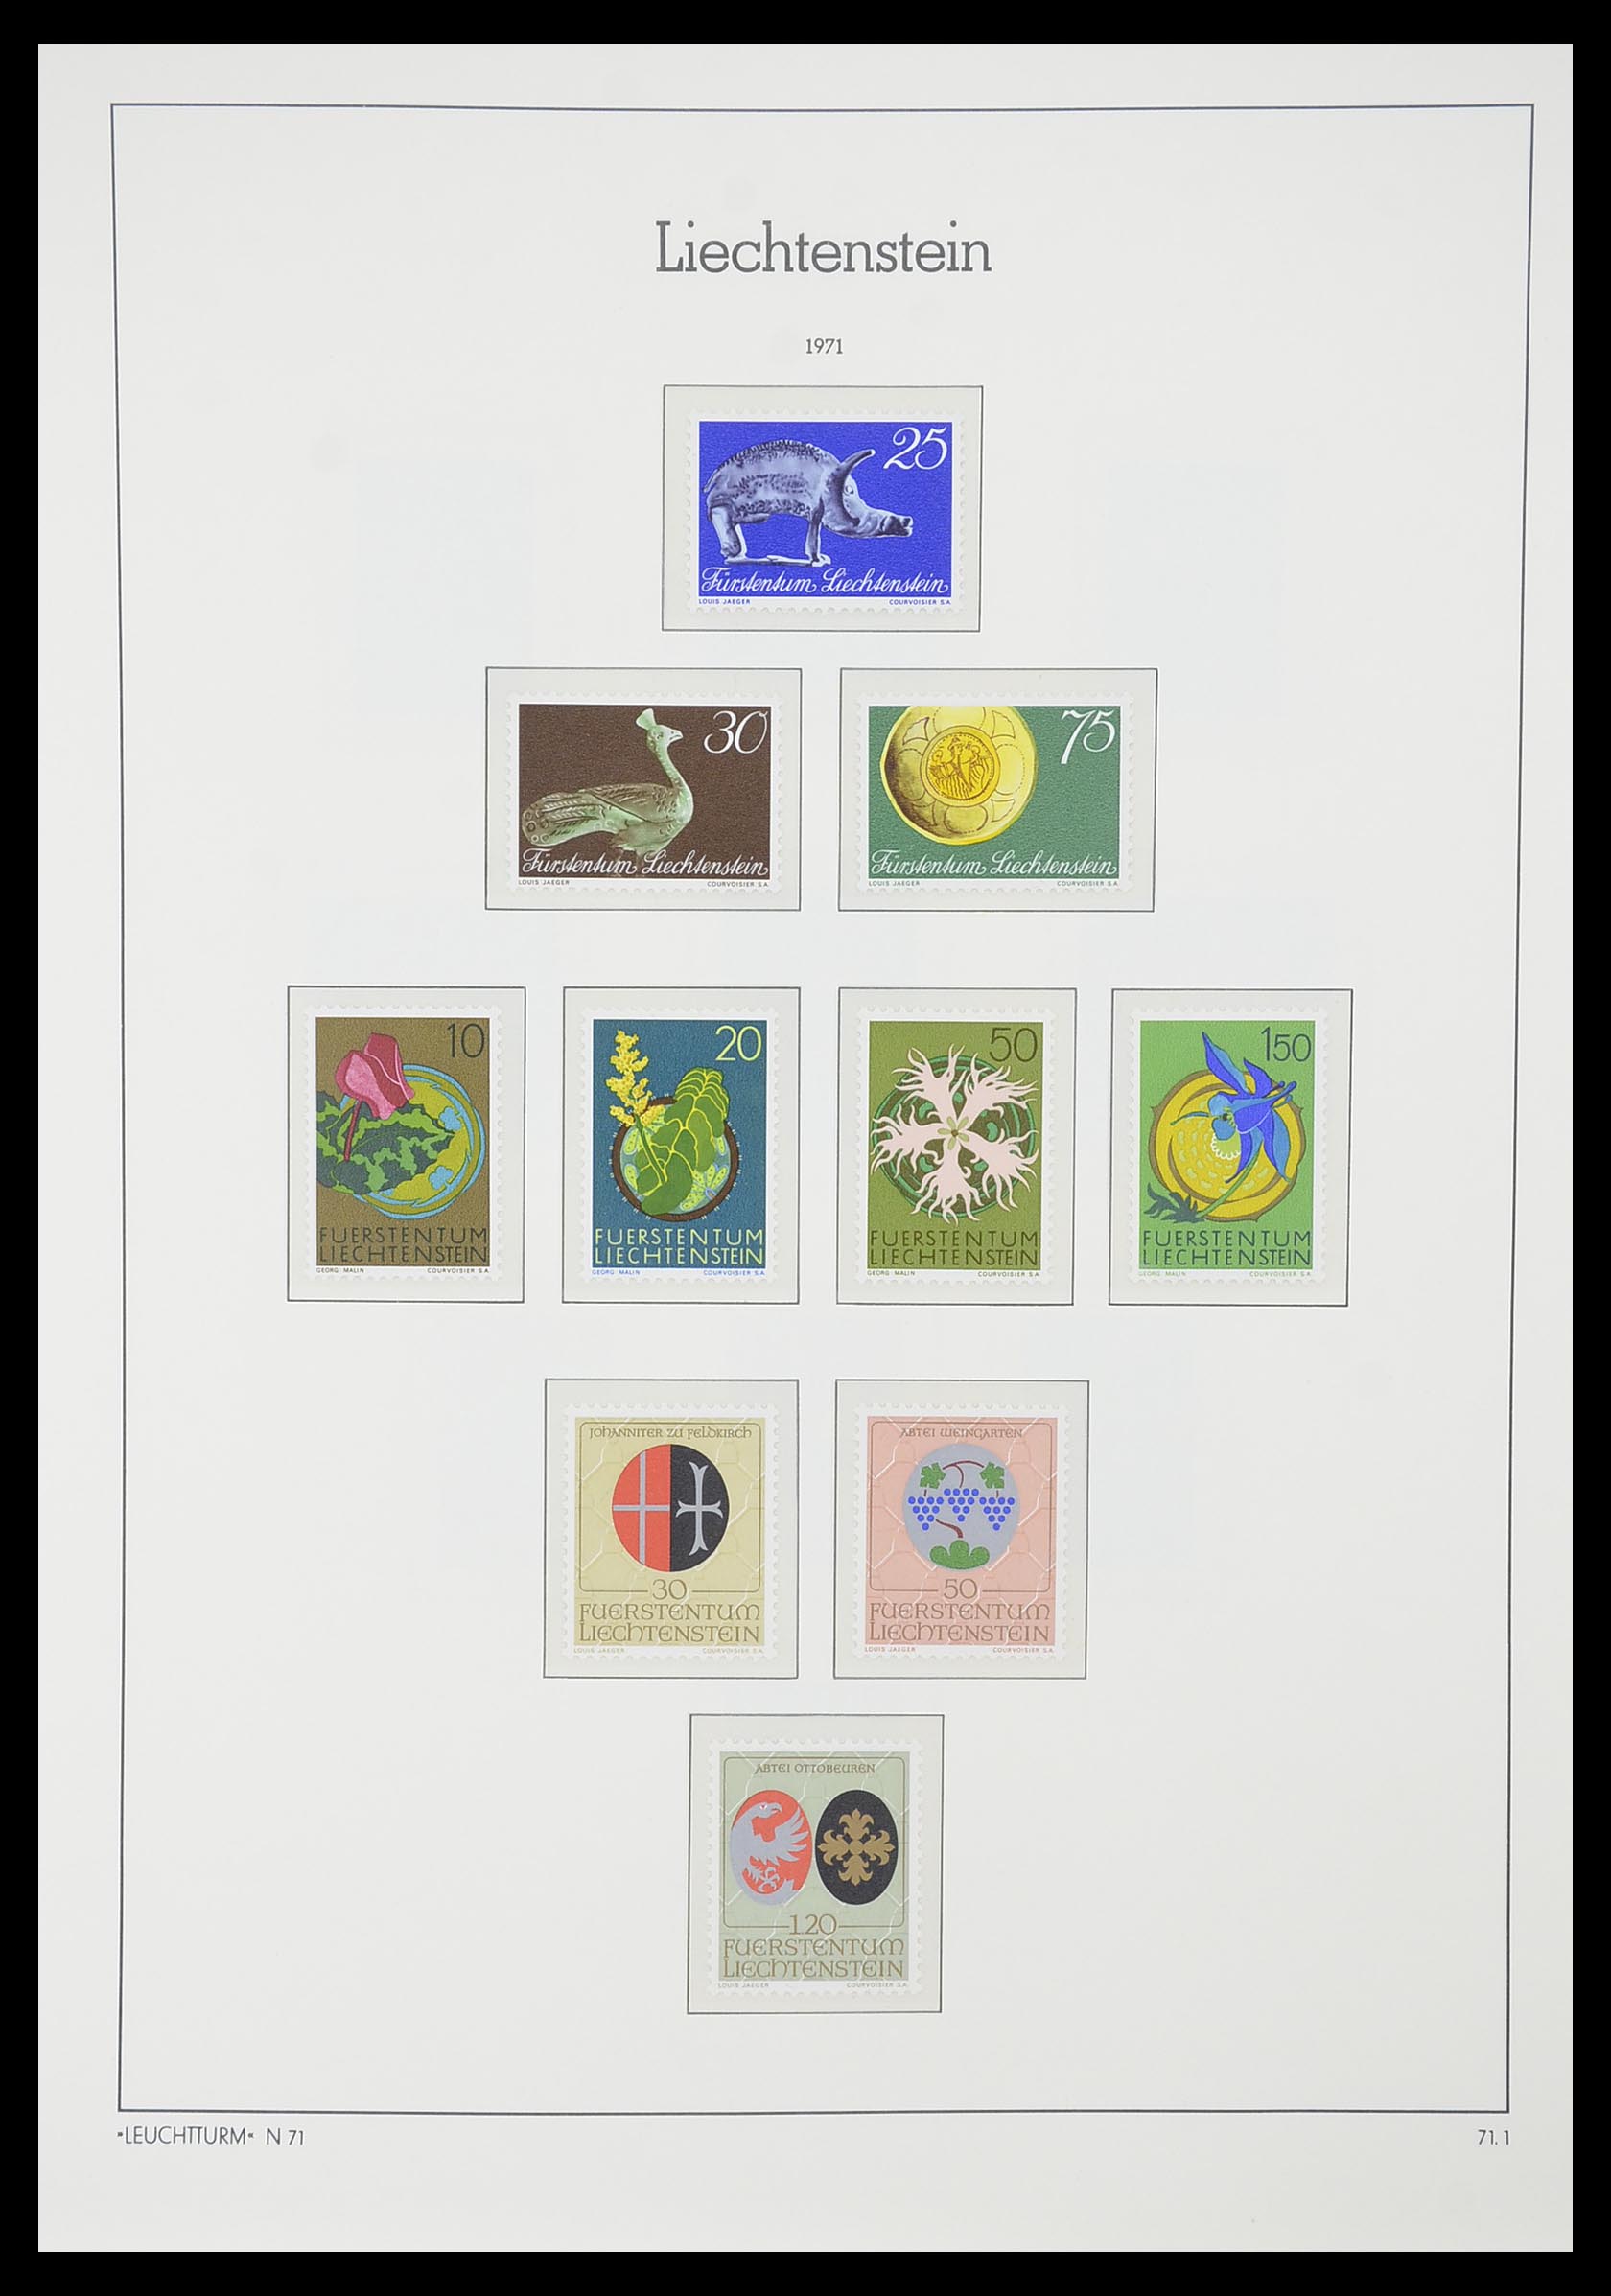 33825 057 - Stamp collection 33825 Liechtenstein 1912-1997.